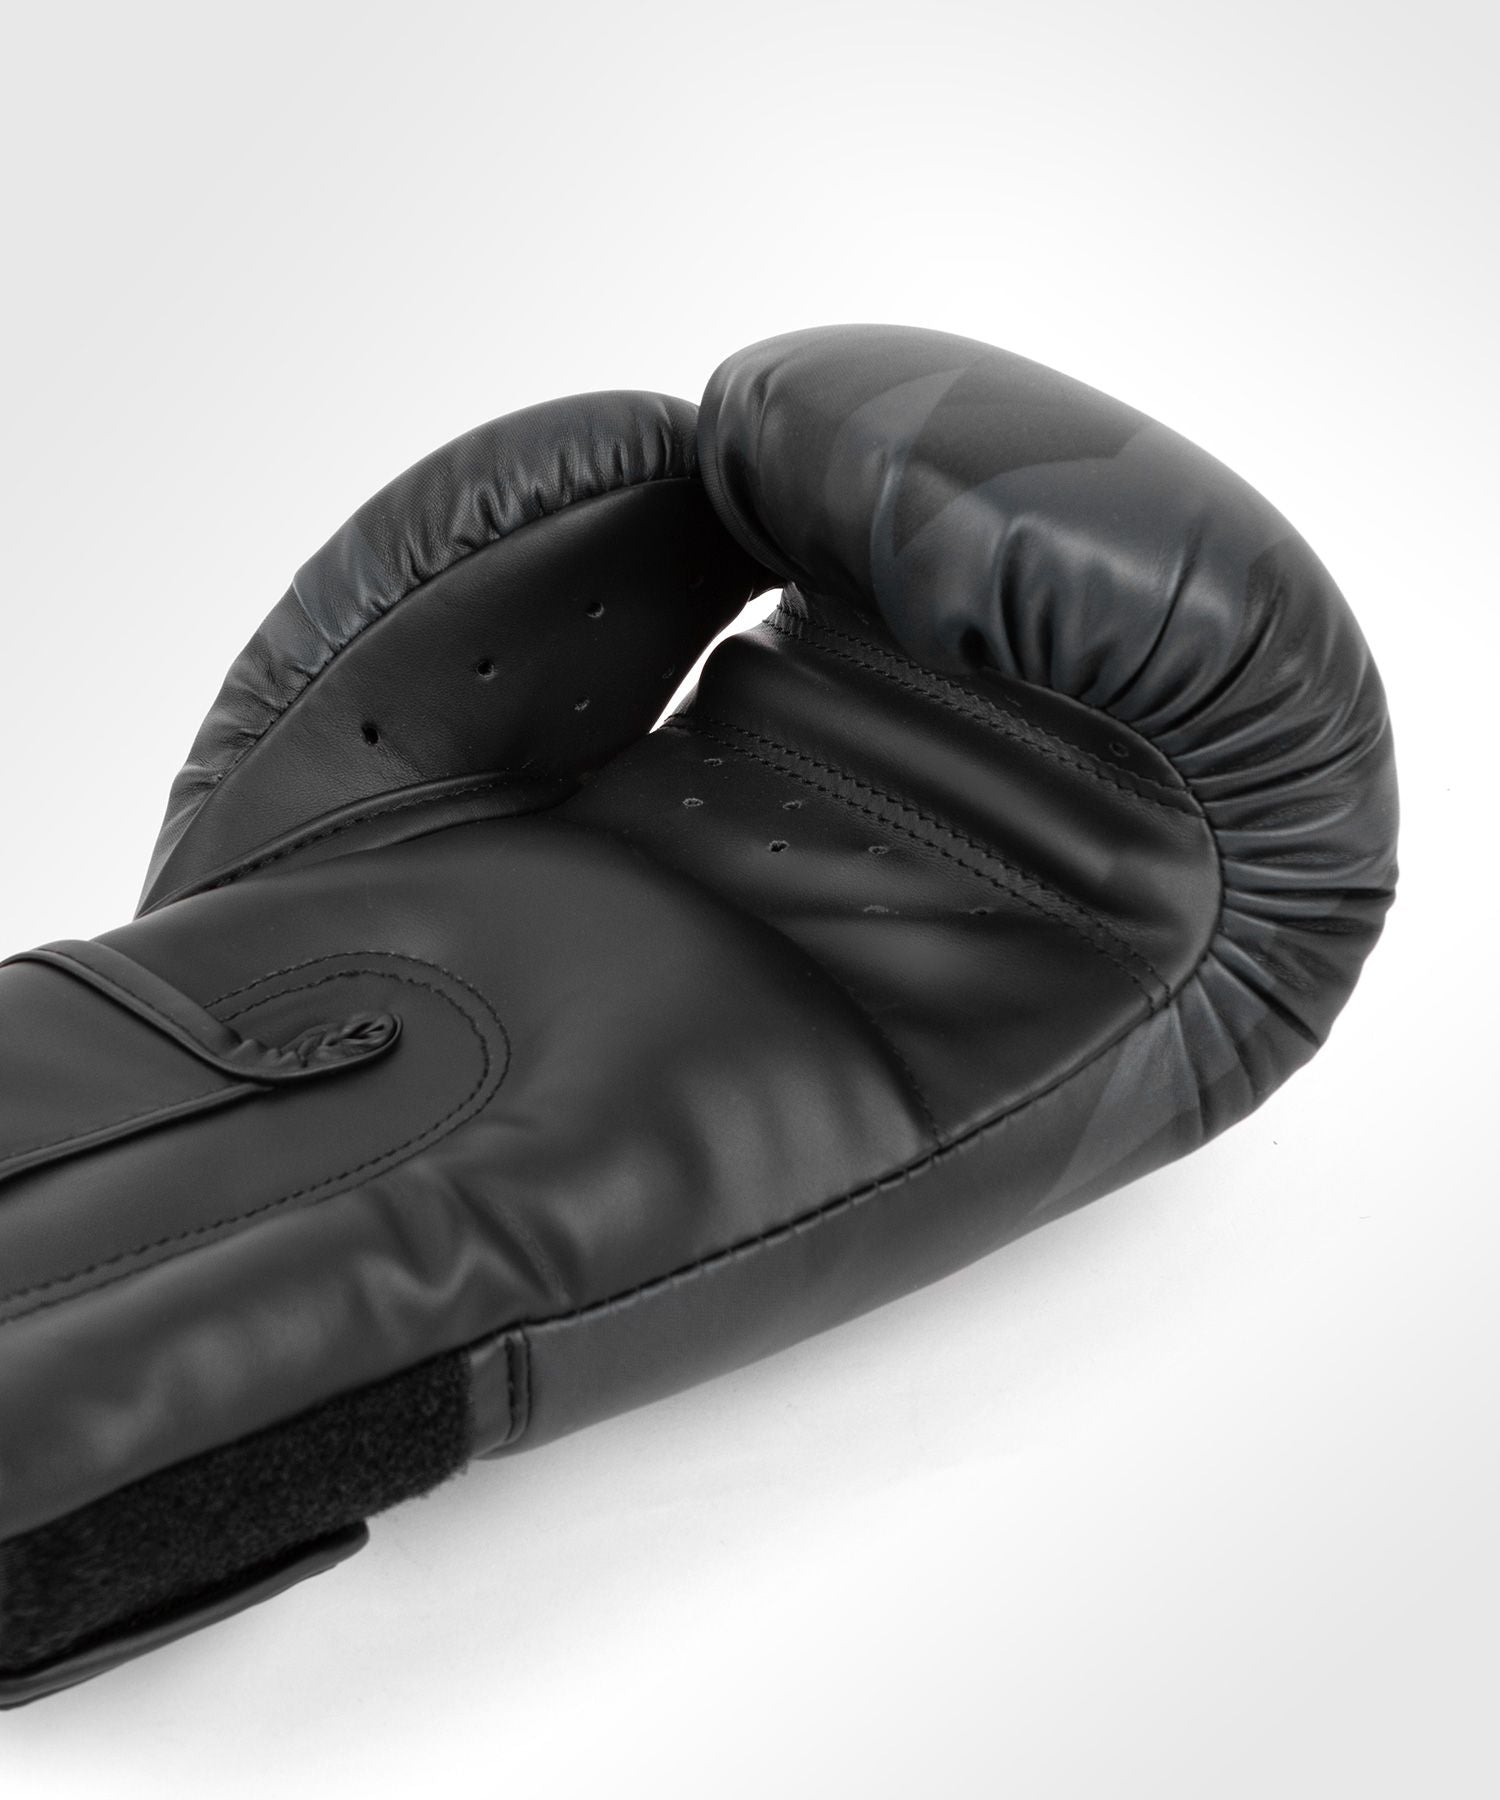 Venum Razor Boxing Gloves - Black - Budo Online